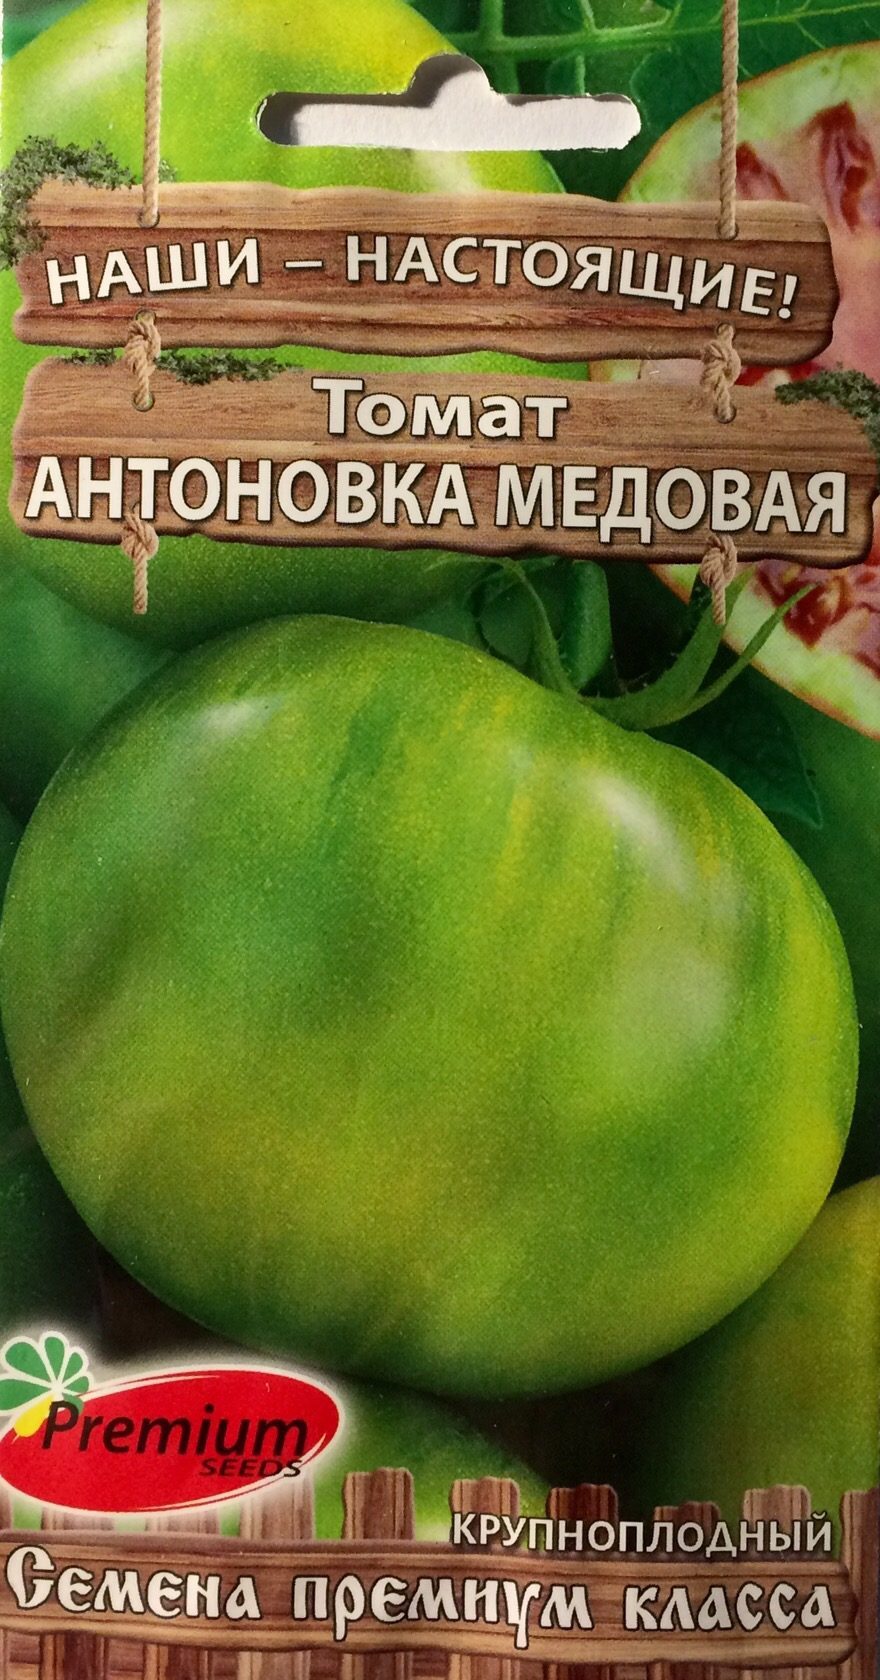 Томат "медовое сердце" f1: описание сорта, характеристики плодов-помидор, фото материалы и рекомендации по выращиванию русский фермер